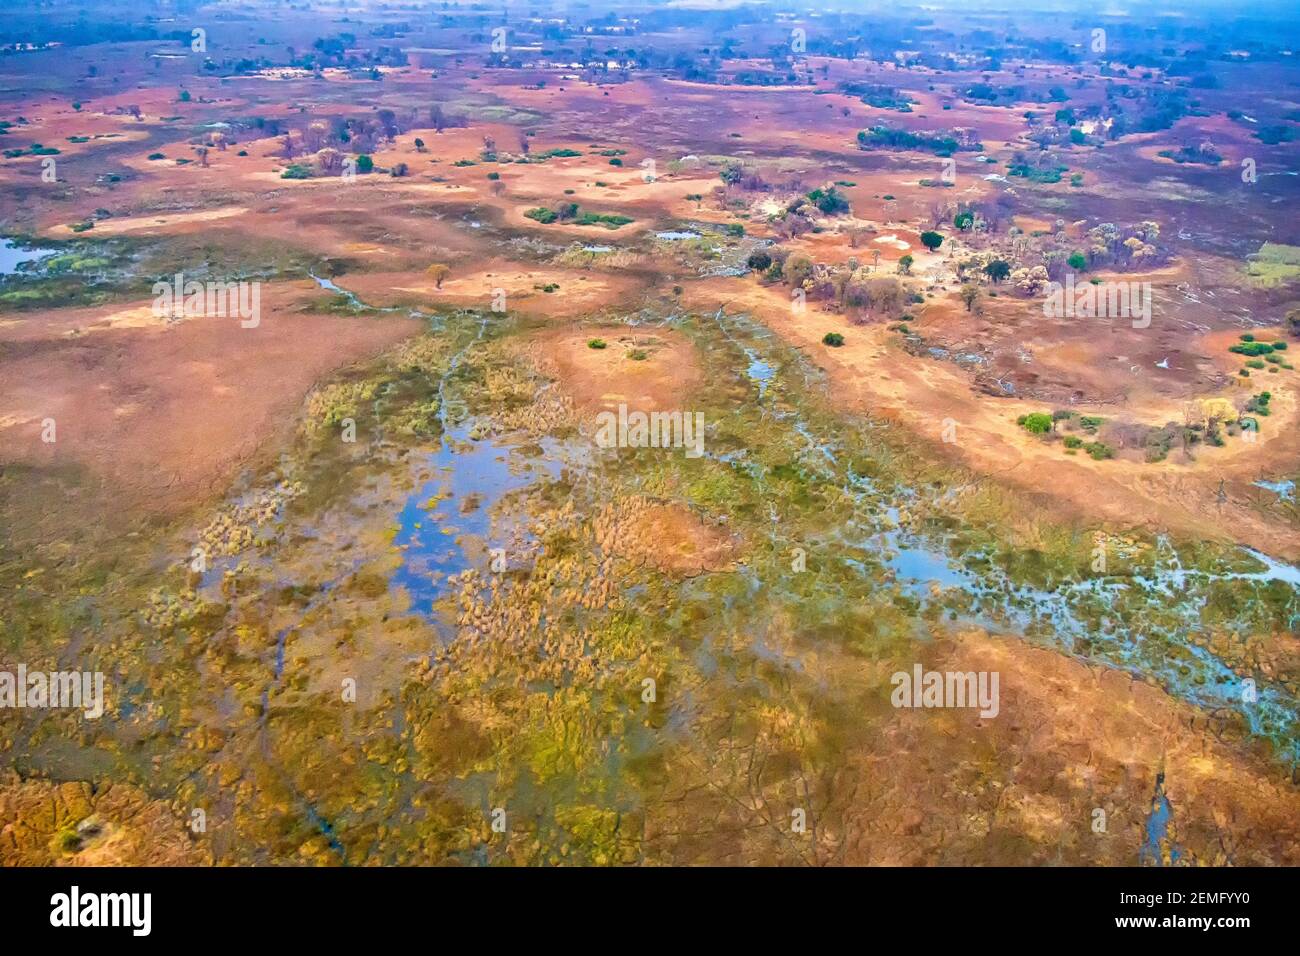 Vue aérienne, zones humides d'Okavango, delta d'Okavango, site du patrimoine mondial de l'UNESCO, zones humides Ramsar, Botswana, Afrique Banque D'Images